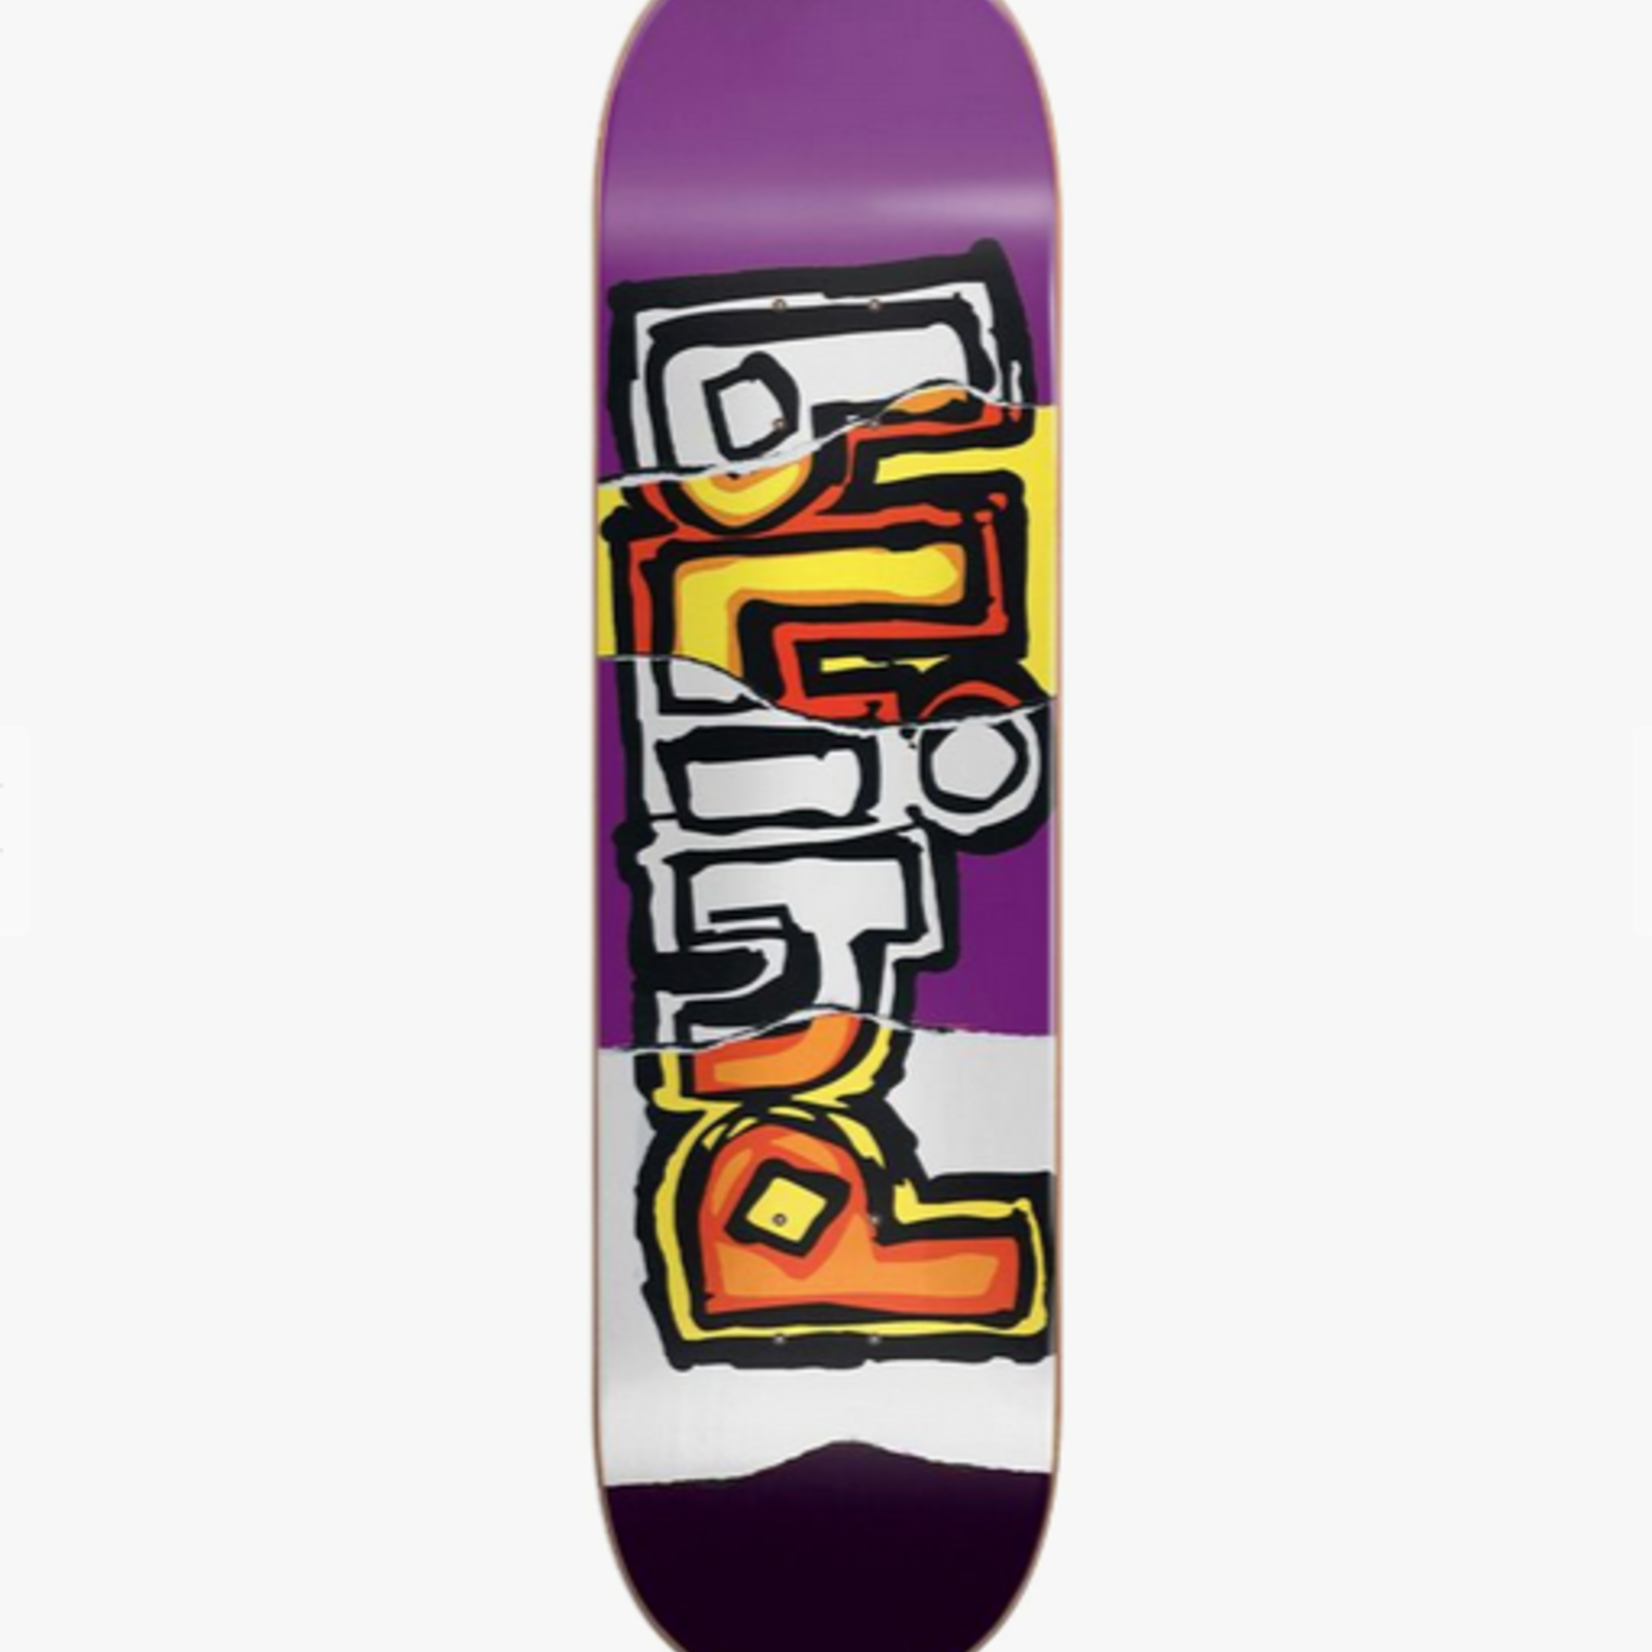 Blind Blind OG Ripped Hybrid Skateboard Deck 8.0 (Purple)